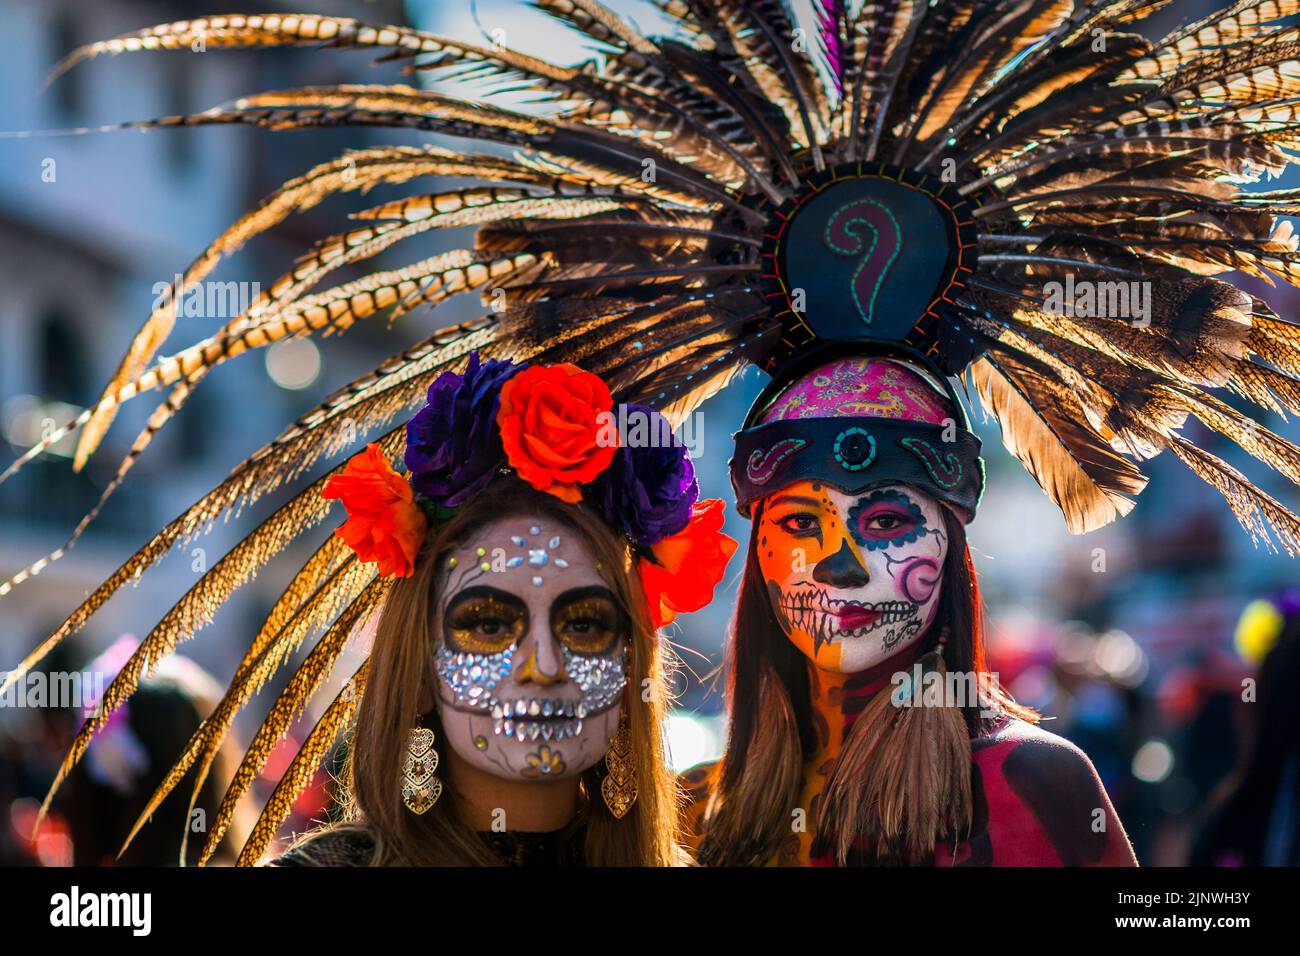 Ein mexikanisches Mädchen, bekleidet als La Catrina und mit einem Kopfschmuck aus aztekischen Federn, nimmt an den Feierlichkeiten zum Tag der Toten in Taxco, Mexiko, Teil. Stockfoto